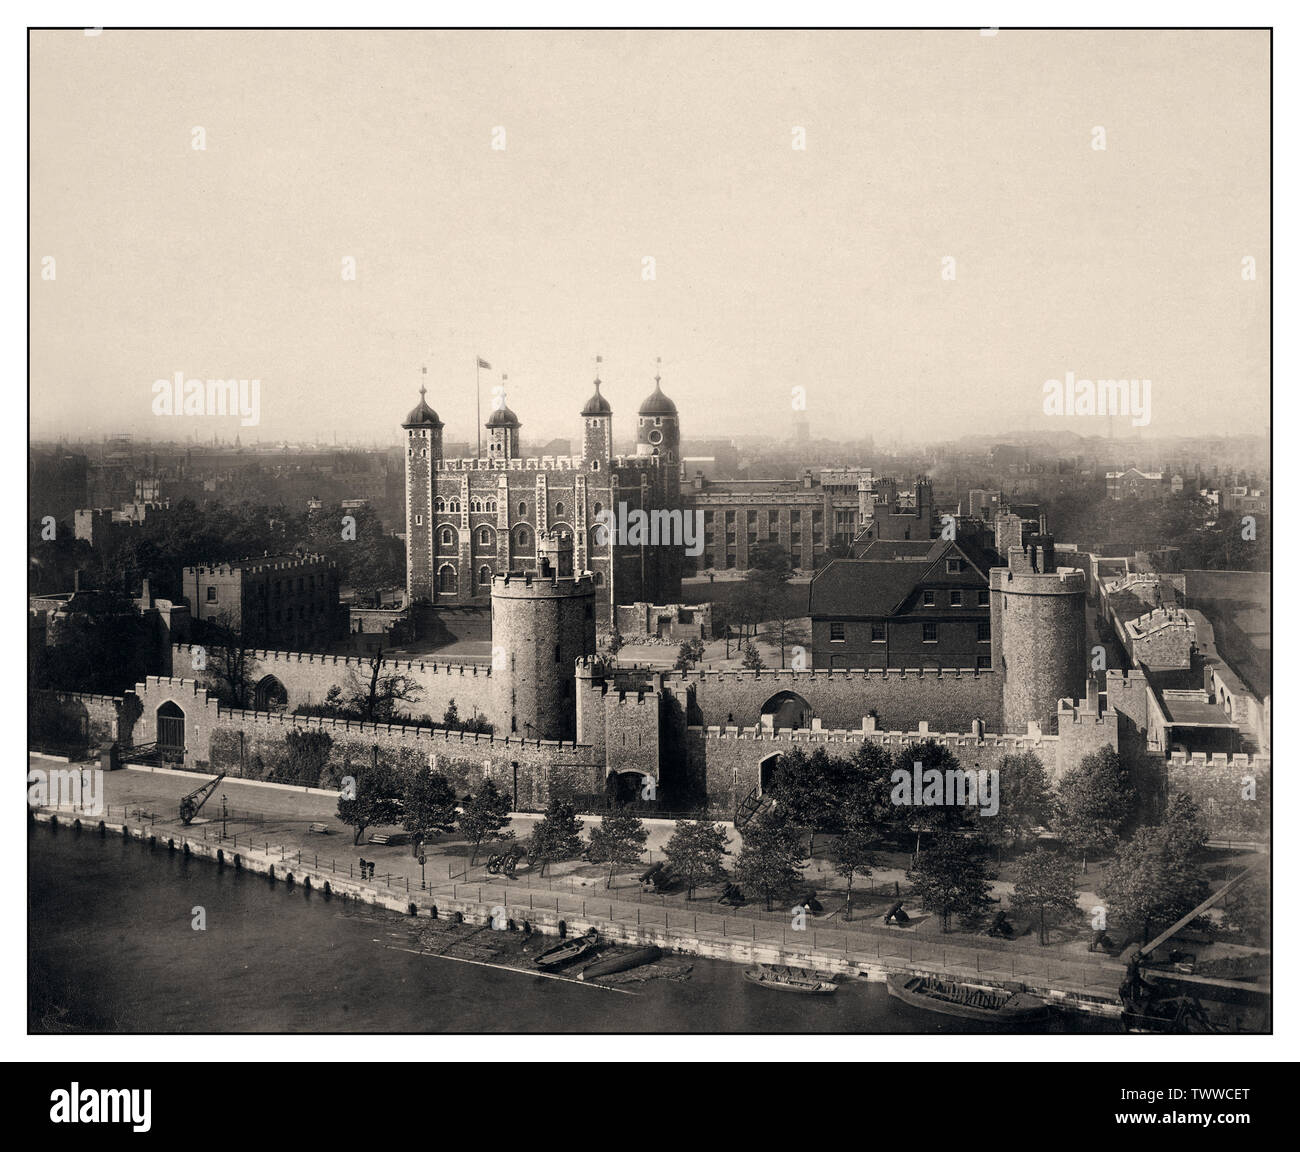 TOWER OF LONDON 1940 historischen Vintage-Bild des Tower of London mit der Themse im Vordergrund B & W. Kriegszeit 2. Weltkrieg Spione und Verräter wurden hier gehalten und durch Erschießungskommando hingerichtet. Zweiter Weltkrieg Zweiter Weltkrieg Stockfoto